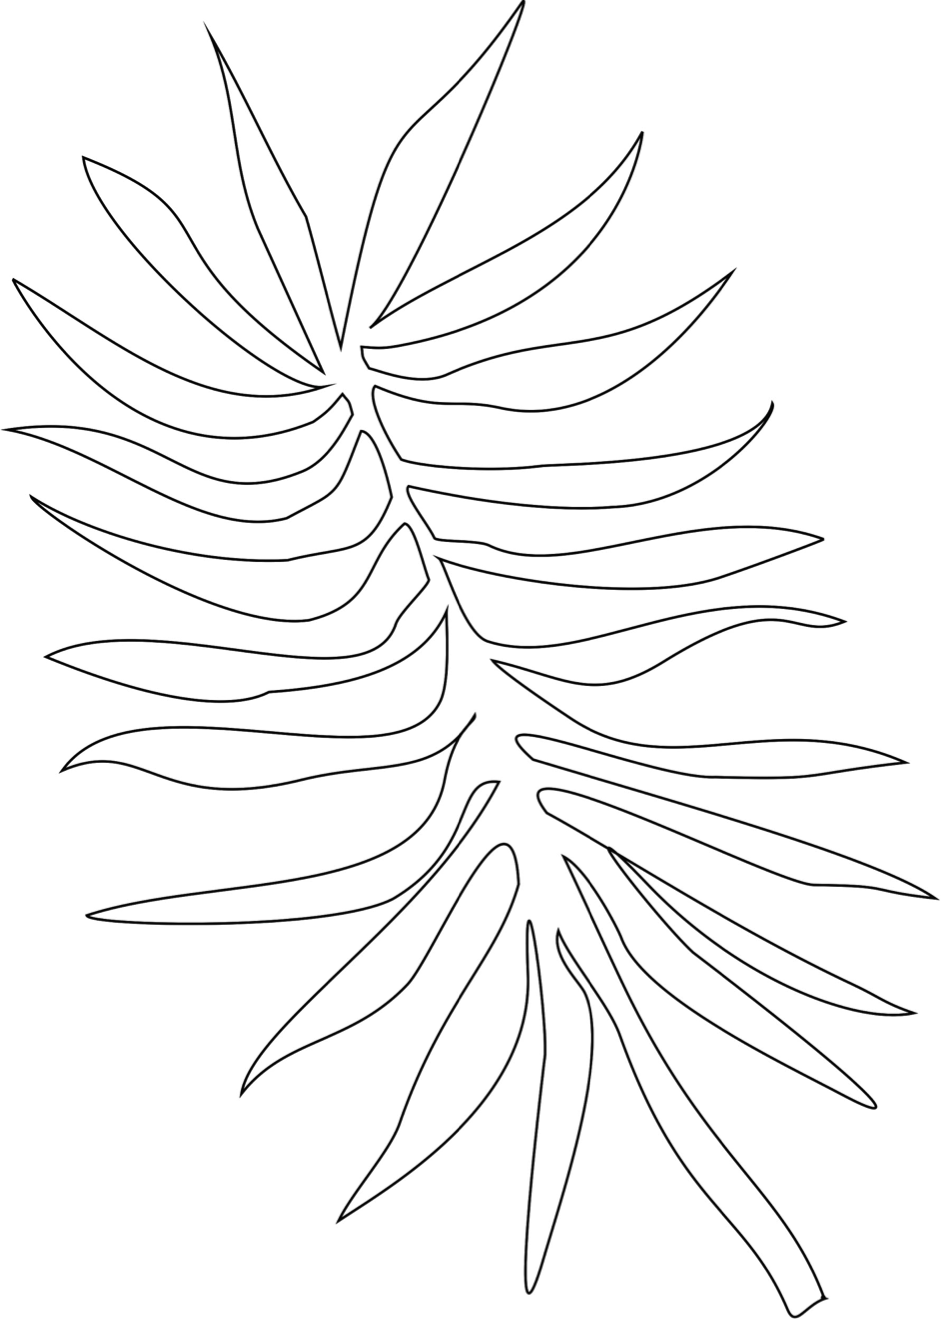 gabarit de rameau (branche de palmier)